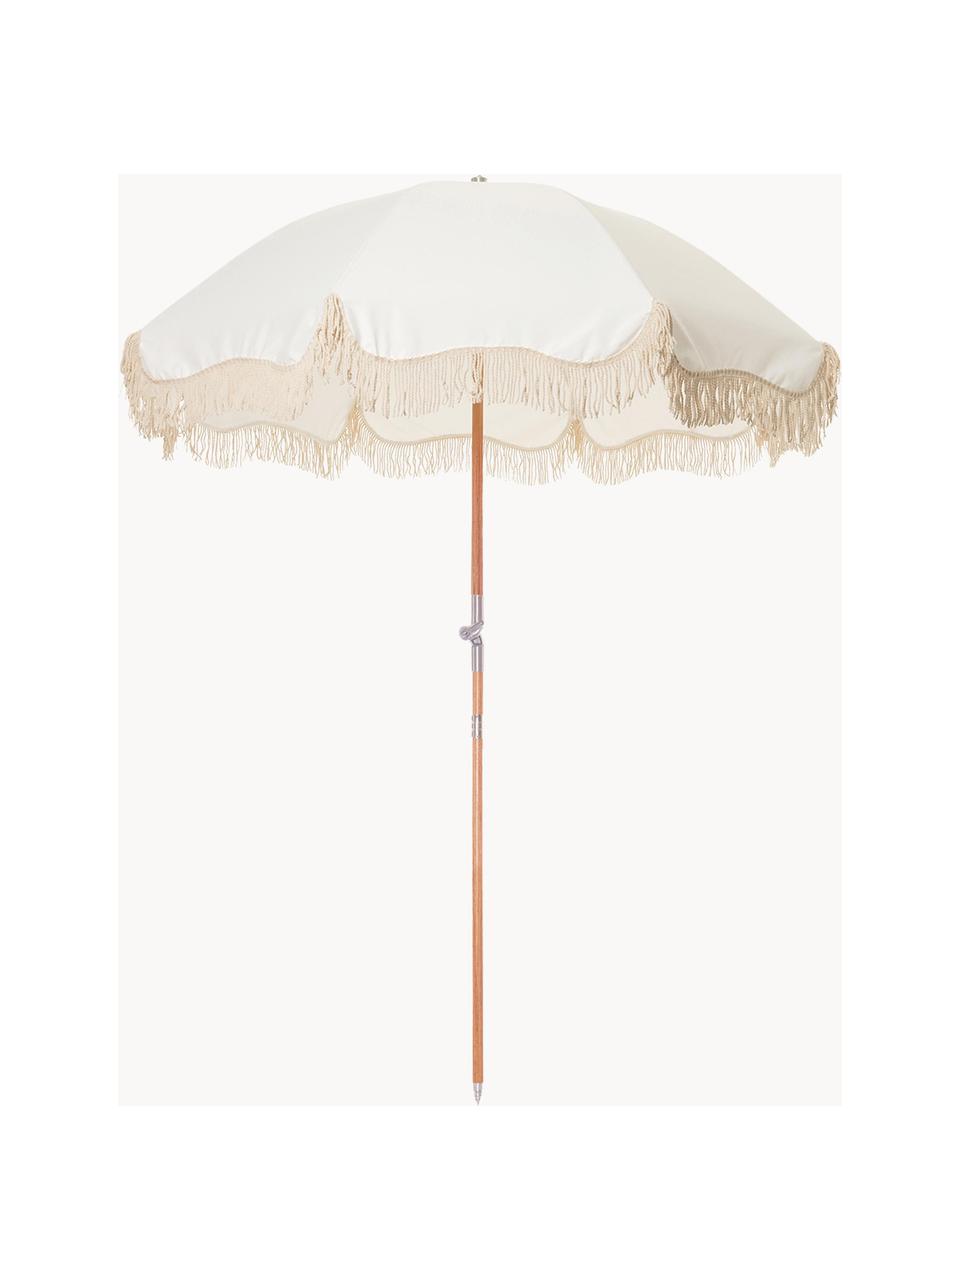 Sonnenschirm Retro mit Fransen, abknickbar, Gestell: Holz, laminiert, Fransen: Baumwolle, Weiß, Cremeweiß, Ø 180 x H 230 cm